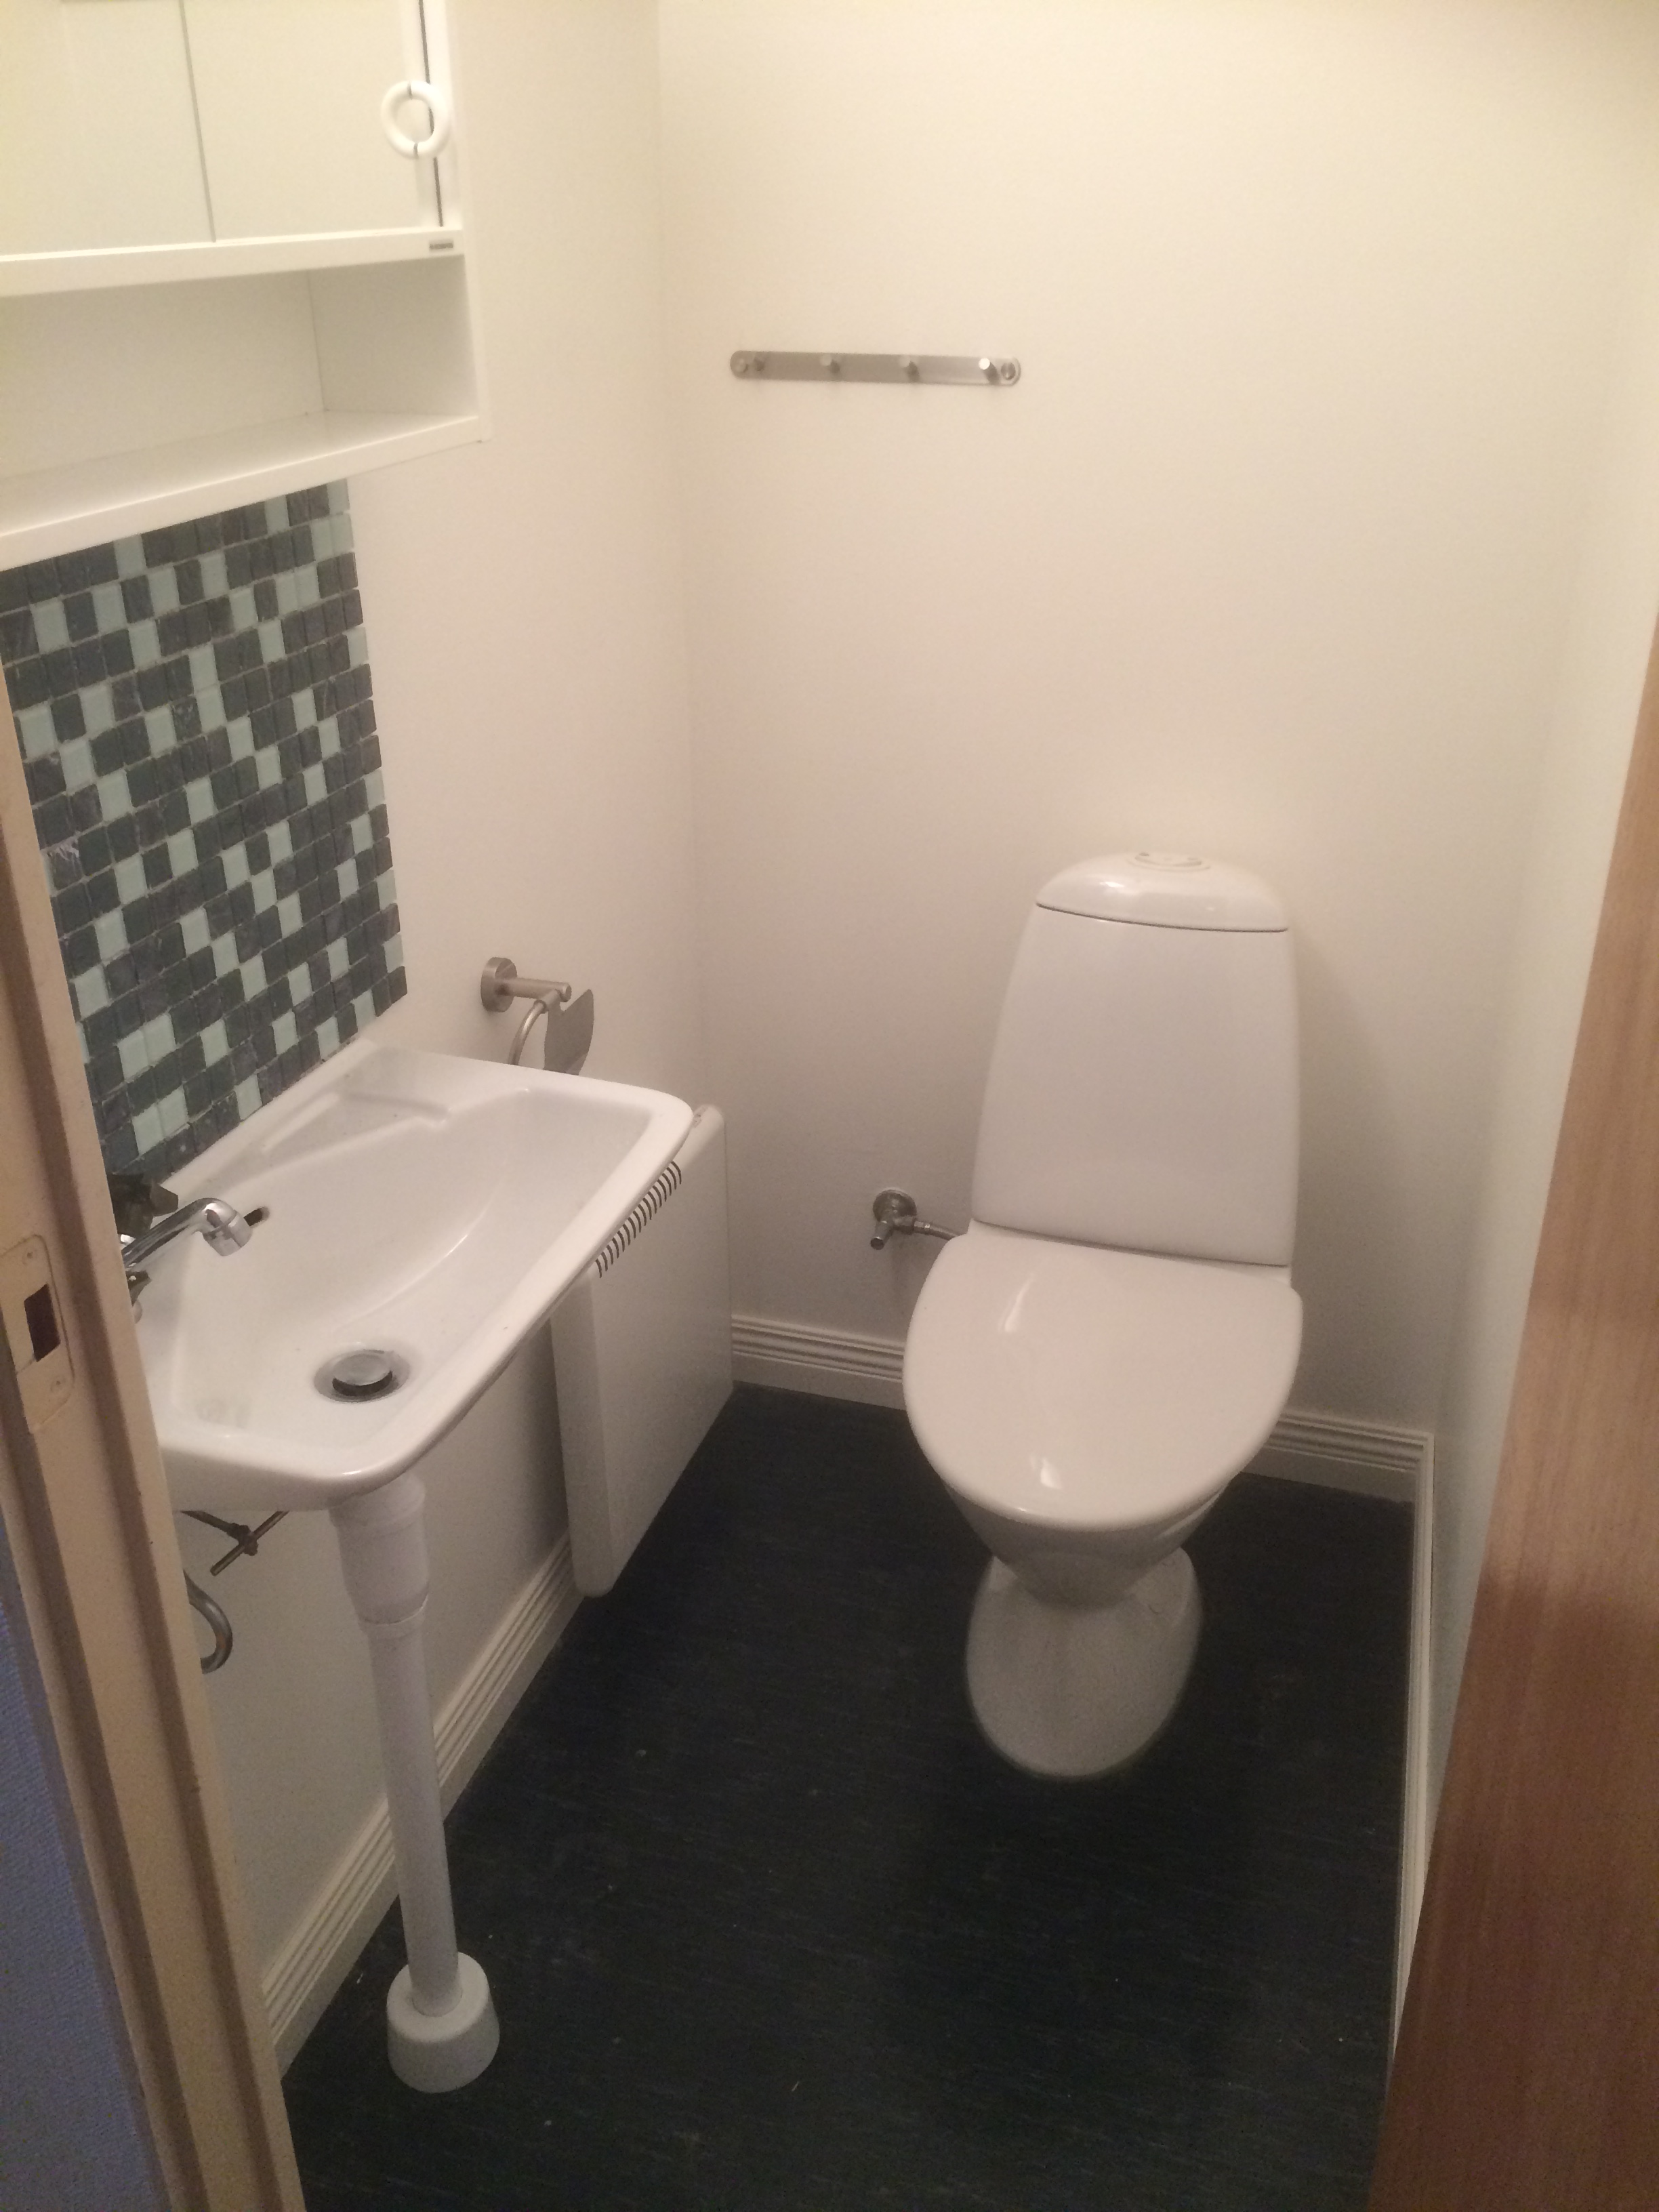 Toalettrum med vit wc-stol. vitt handfat, grön mosaik ovanför handfatet, vita väggar